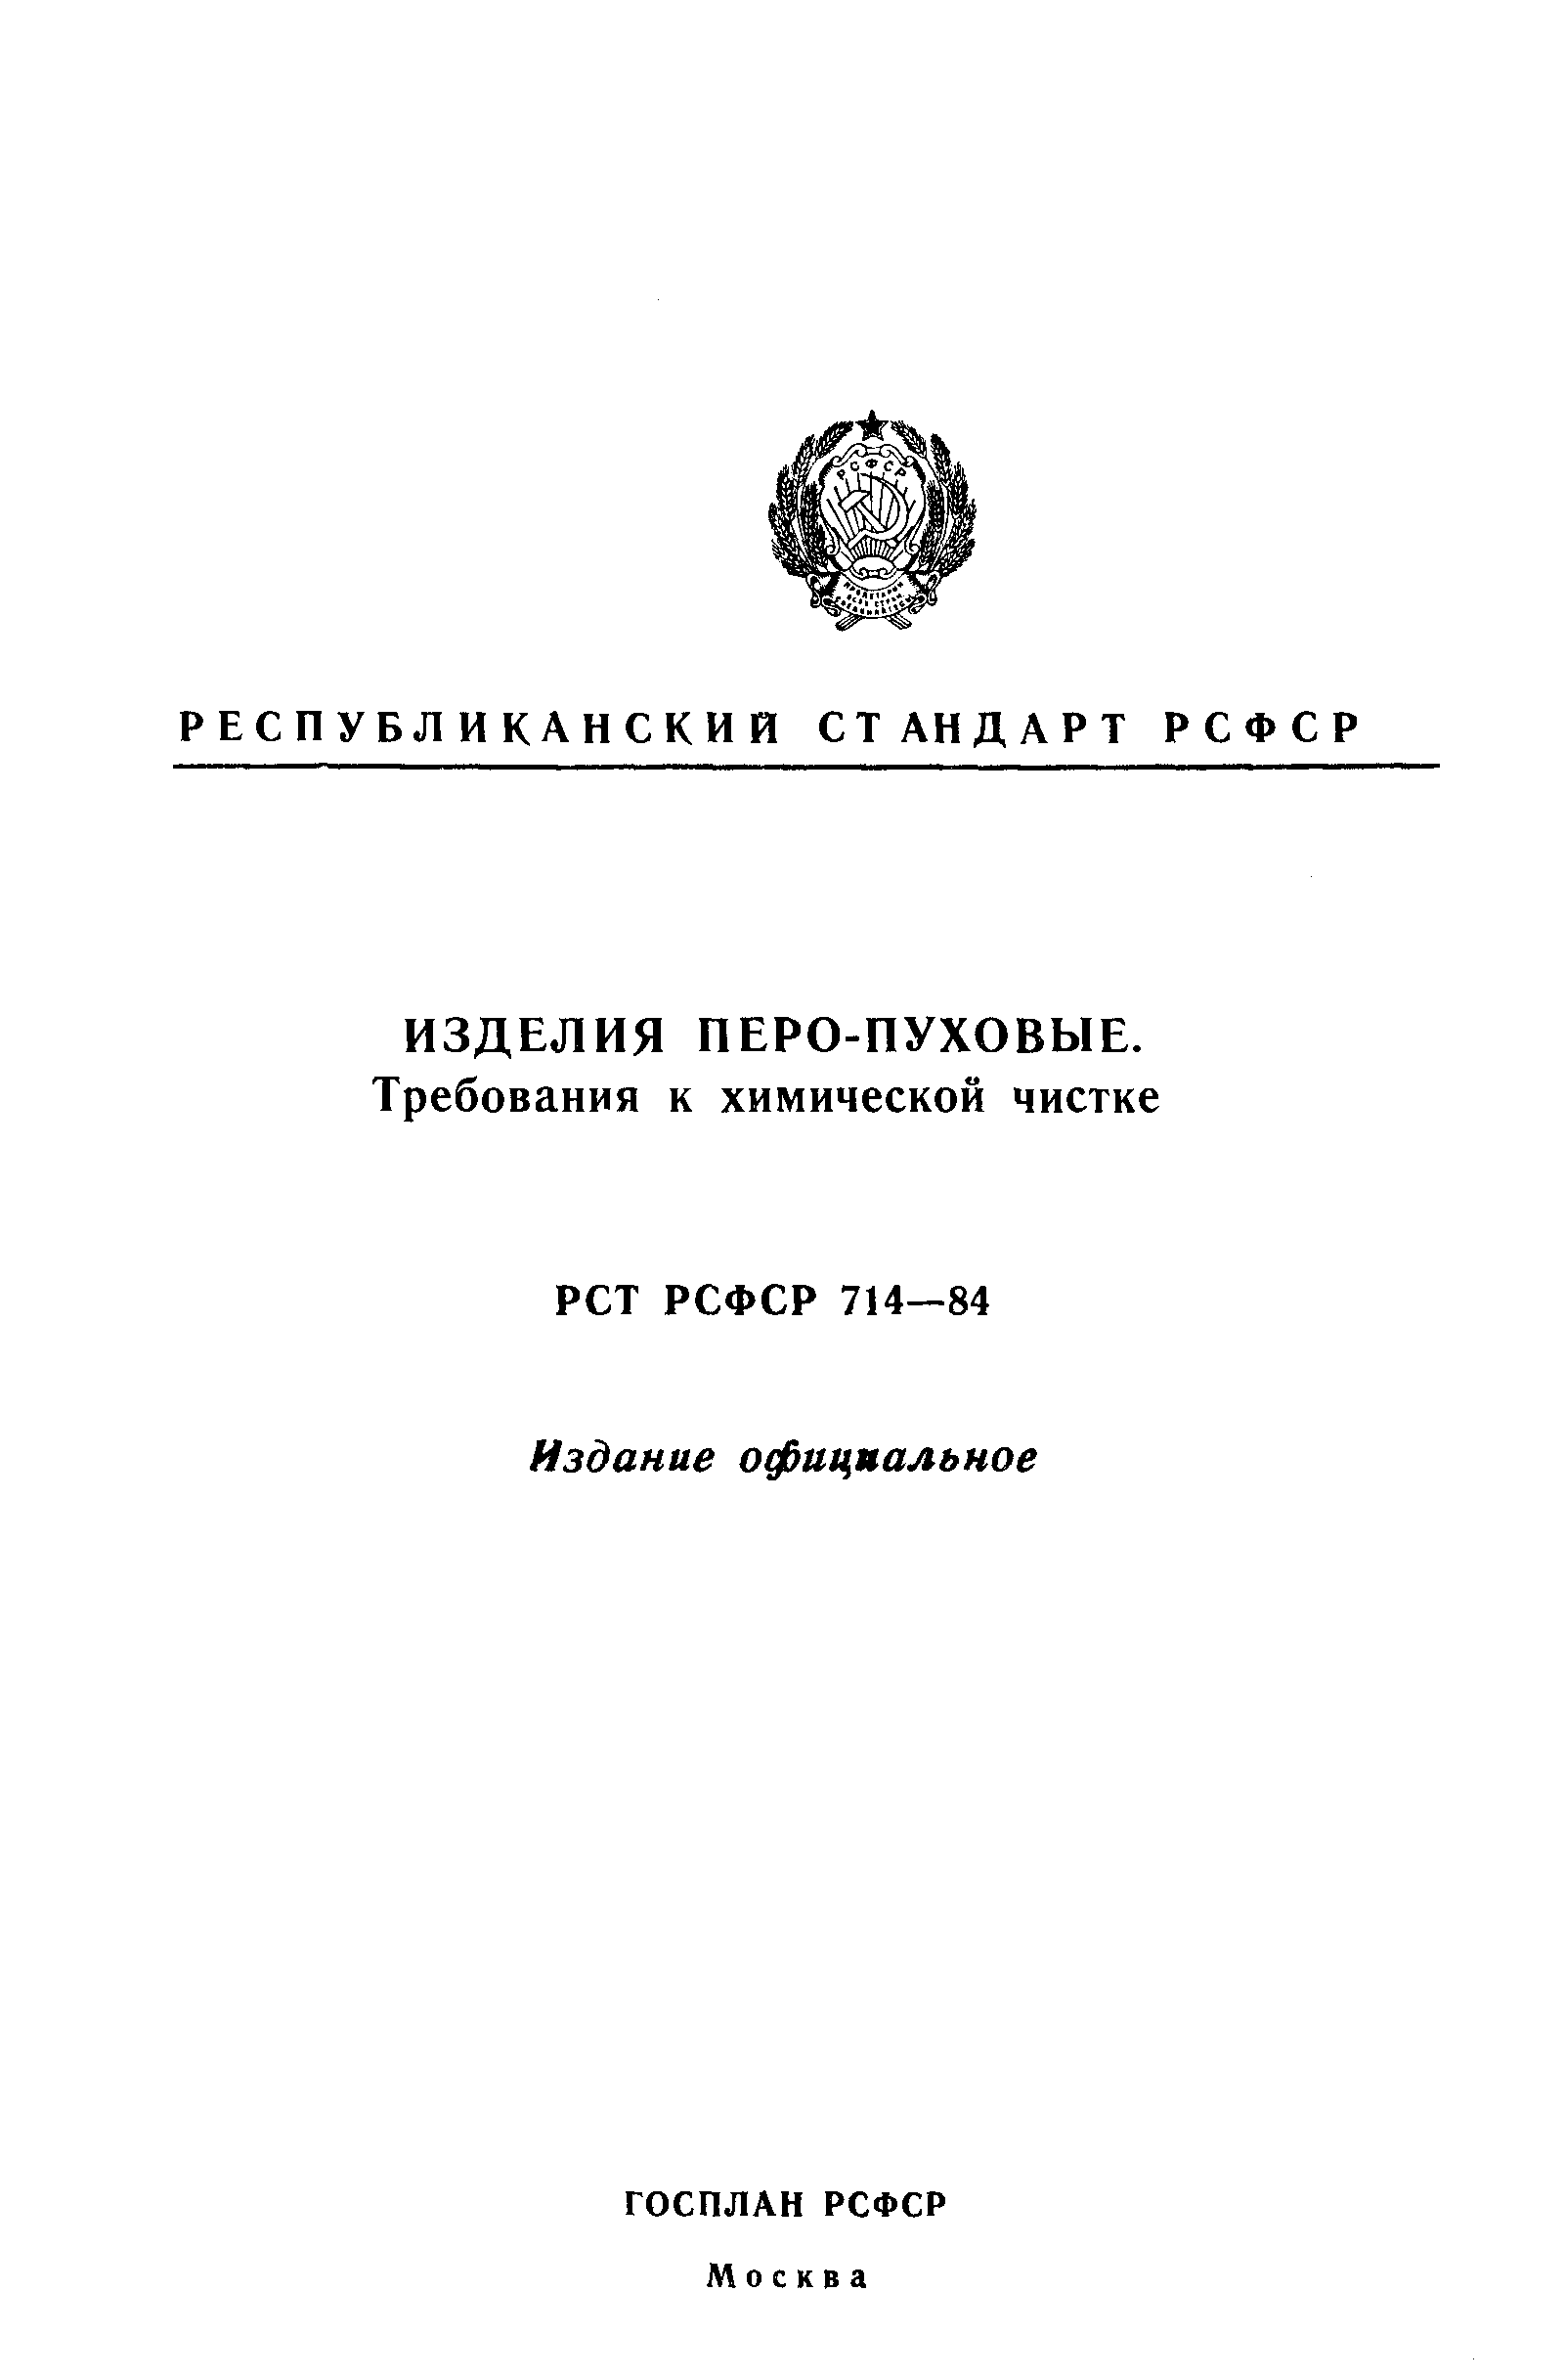 РСТ РСФСР 714-84